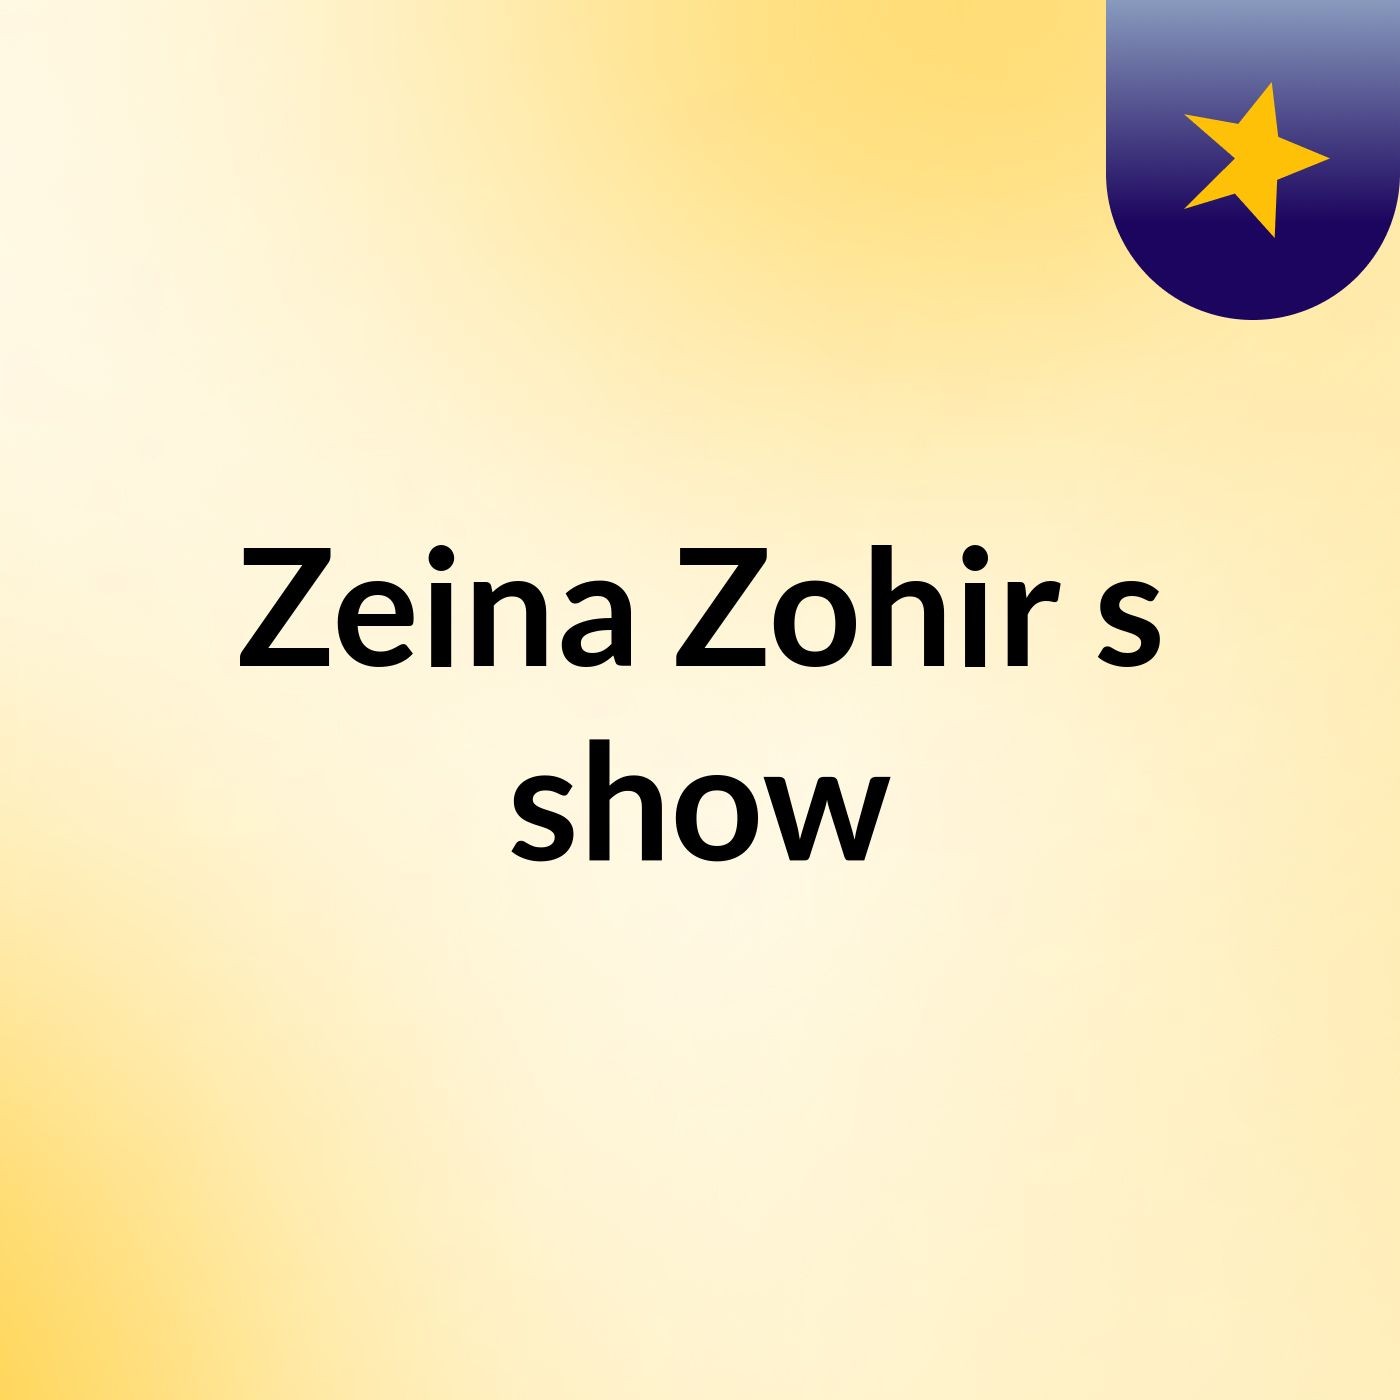 Zeina Zohir's show